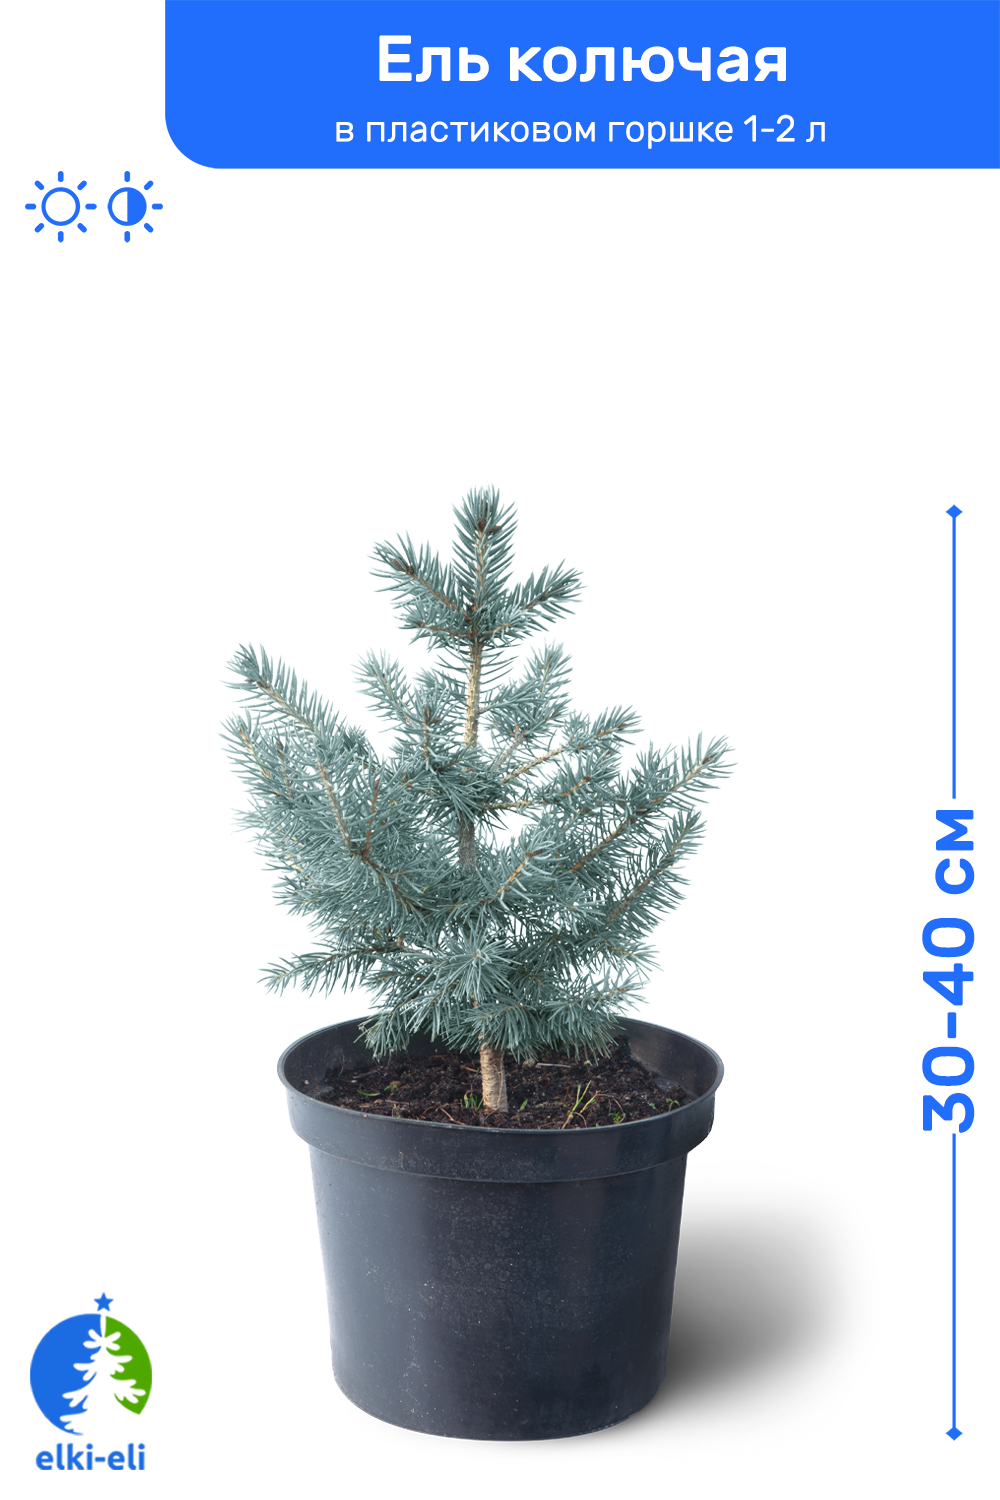 Ель колючая голубая 30-40 см в пластиковом горшке 1-2 л саженец хвойное живое растение